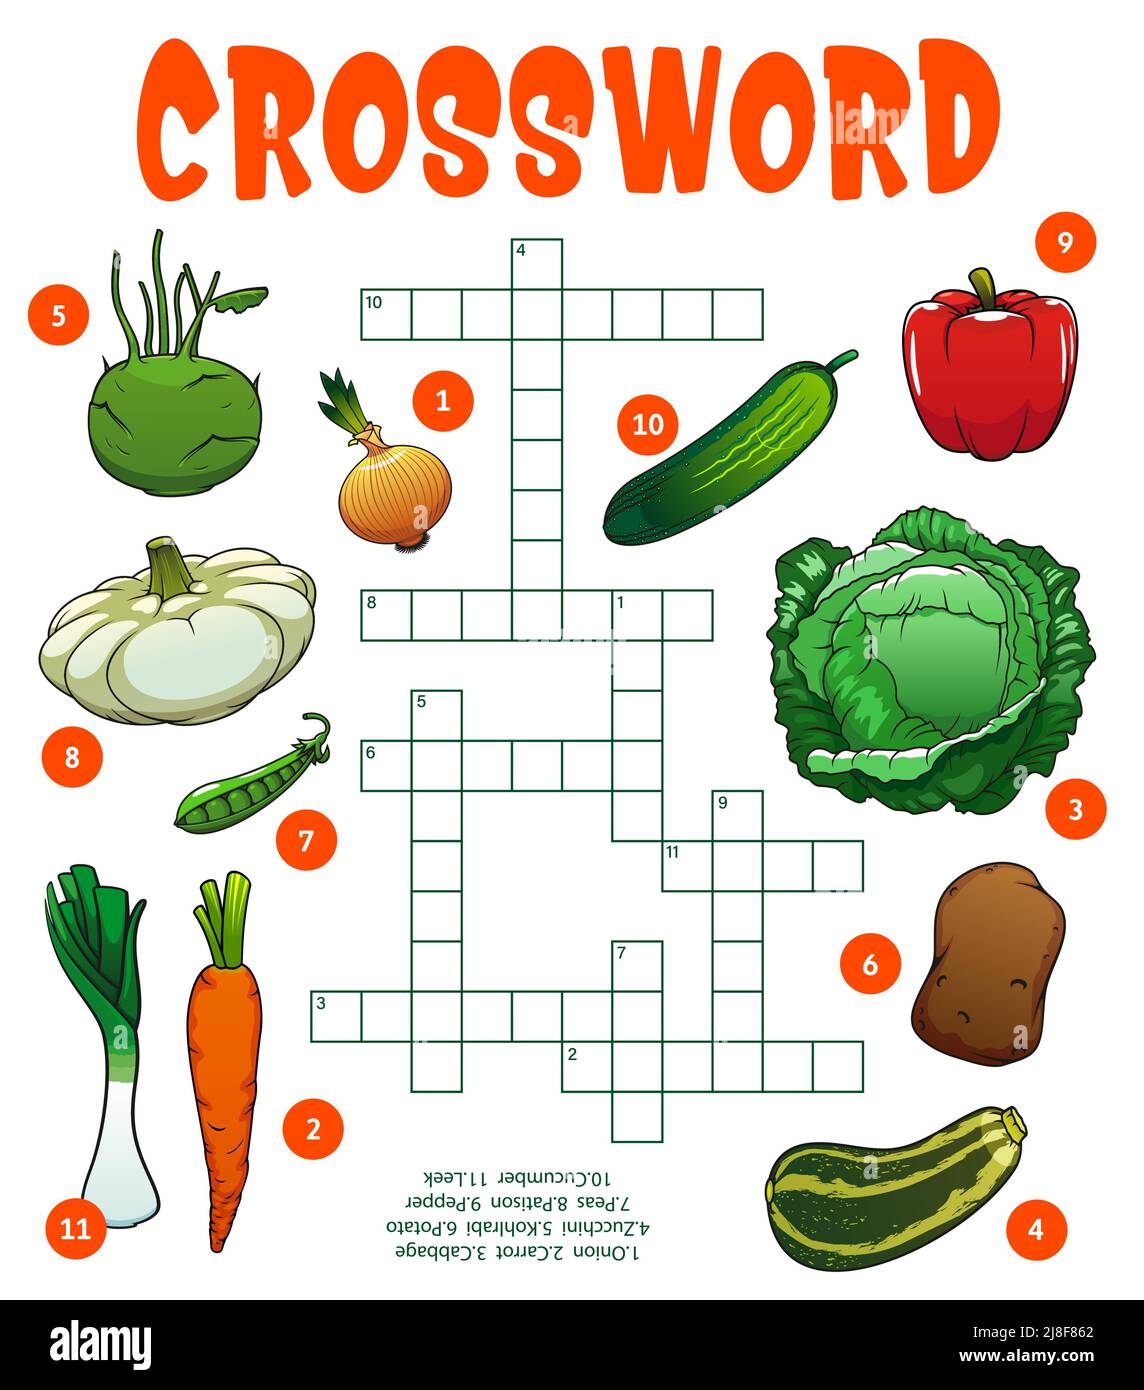 RAW Farm isoliert Gemüse Kreuzworträtsel Arbeitsblatt. Finden Sie ein Wort  Quiz Spiel, Kindergarten Kind intellektuelle Spiel oder Rätsel,  Vorschulkinder Vektortext spielen Aktivität mit reifen und frischen Gemüse  Stock-Vektorgrafik - Alamy